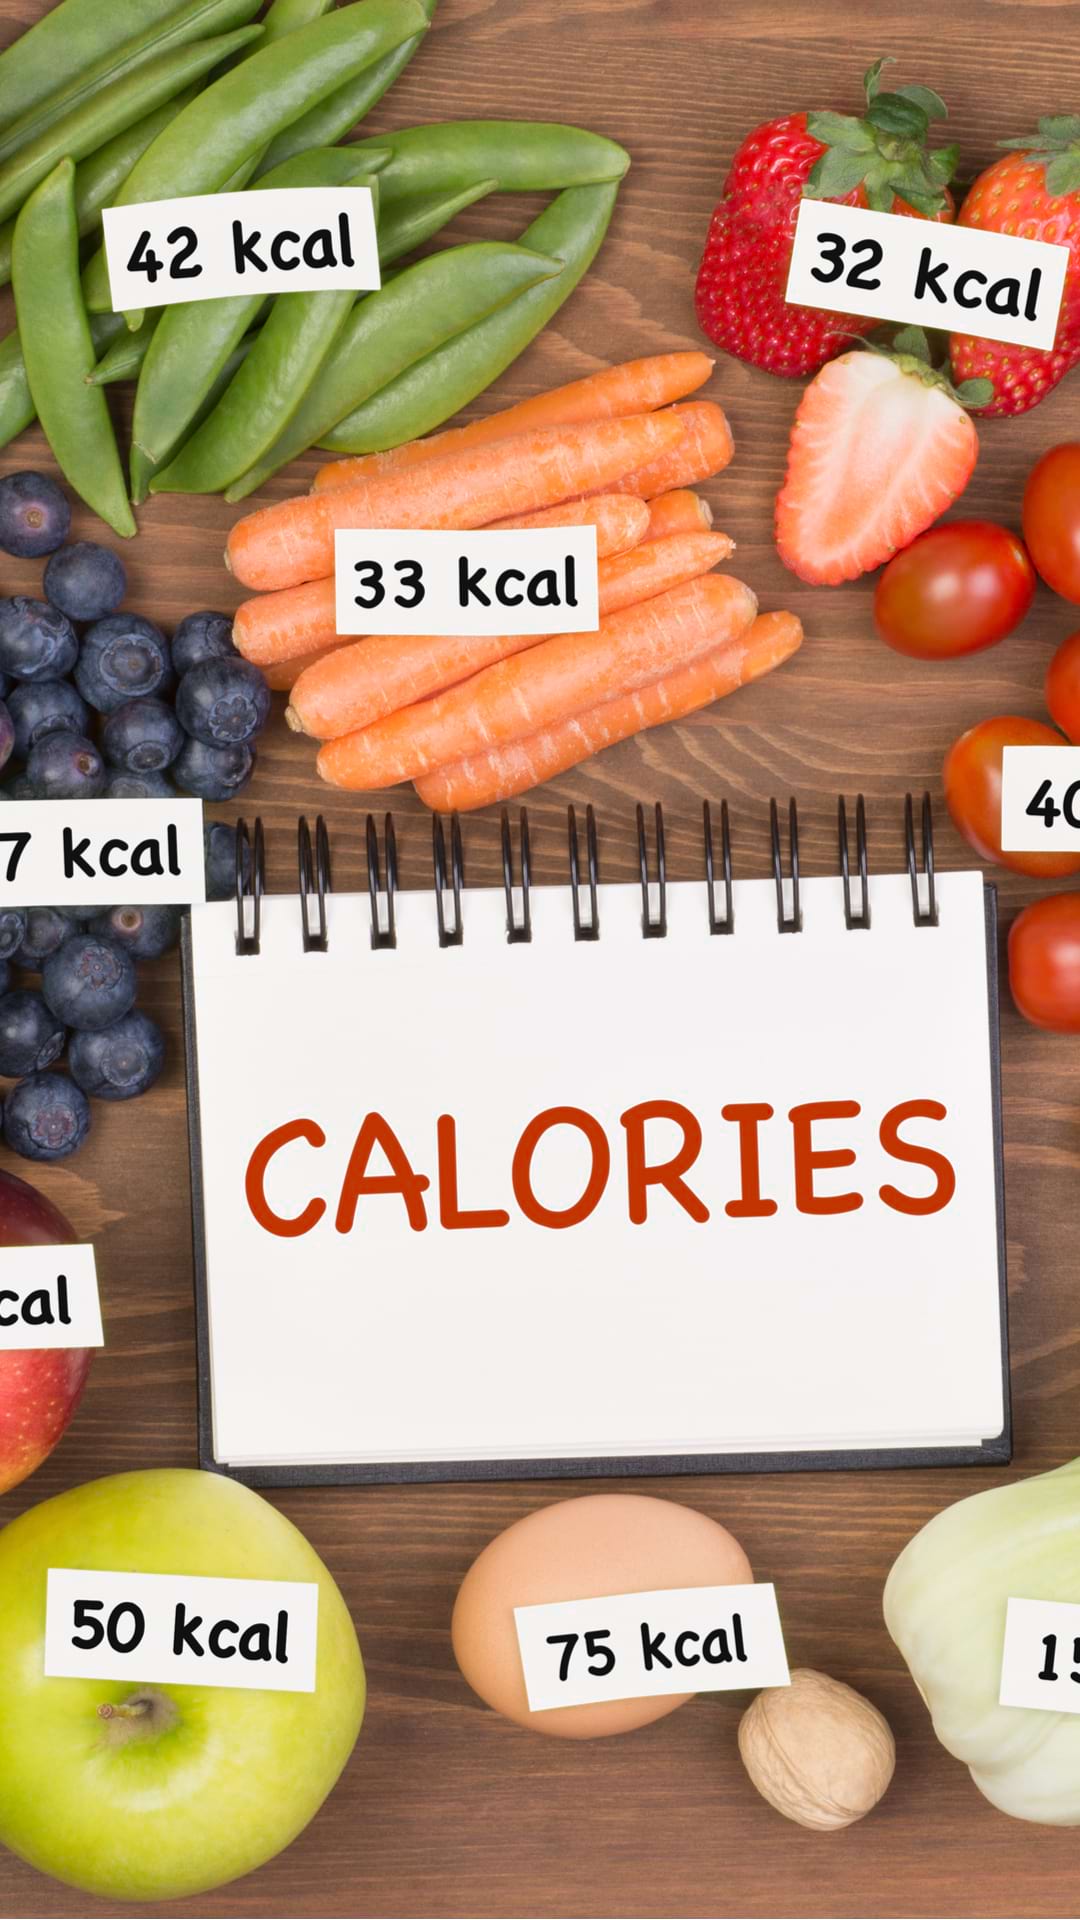 cum să numărăm caloriile pentru a pierde în greutate)